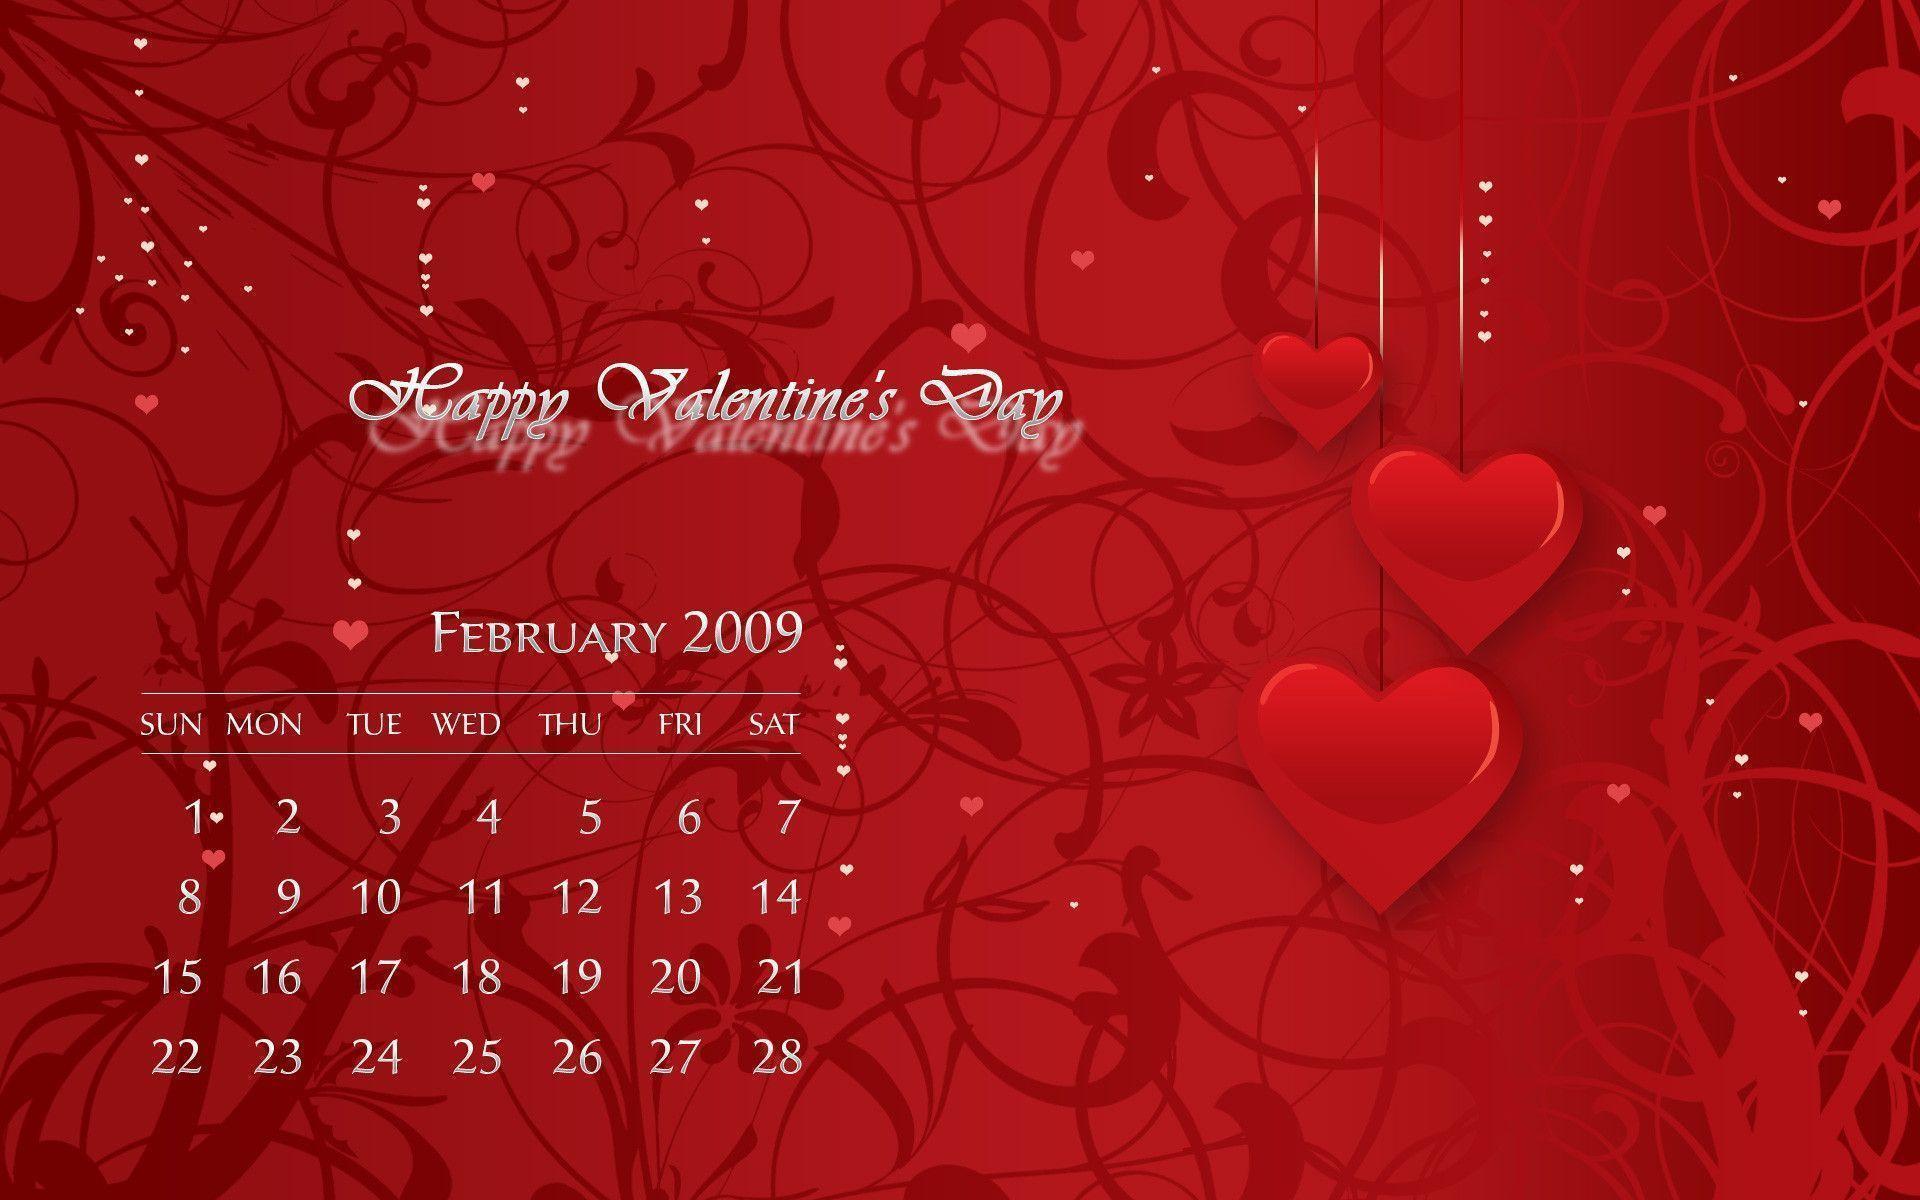 Romantic February 2009 Calendar Wallpaper. Photohop Tutorials